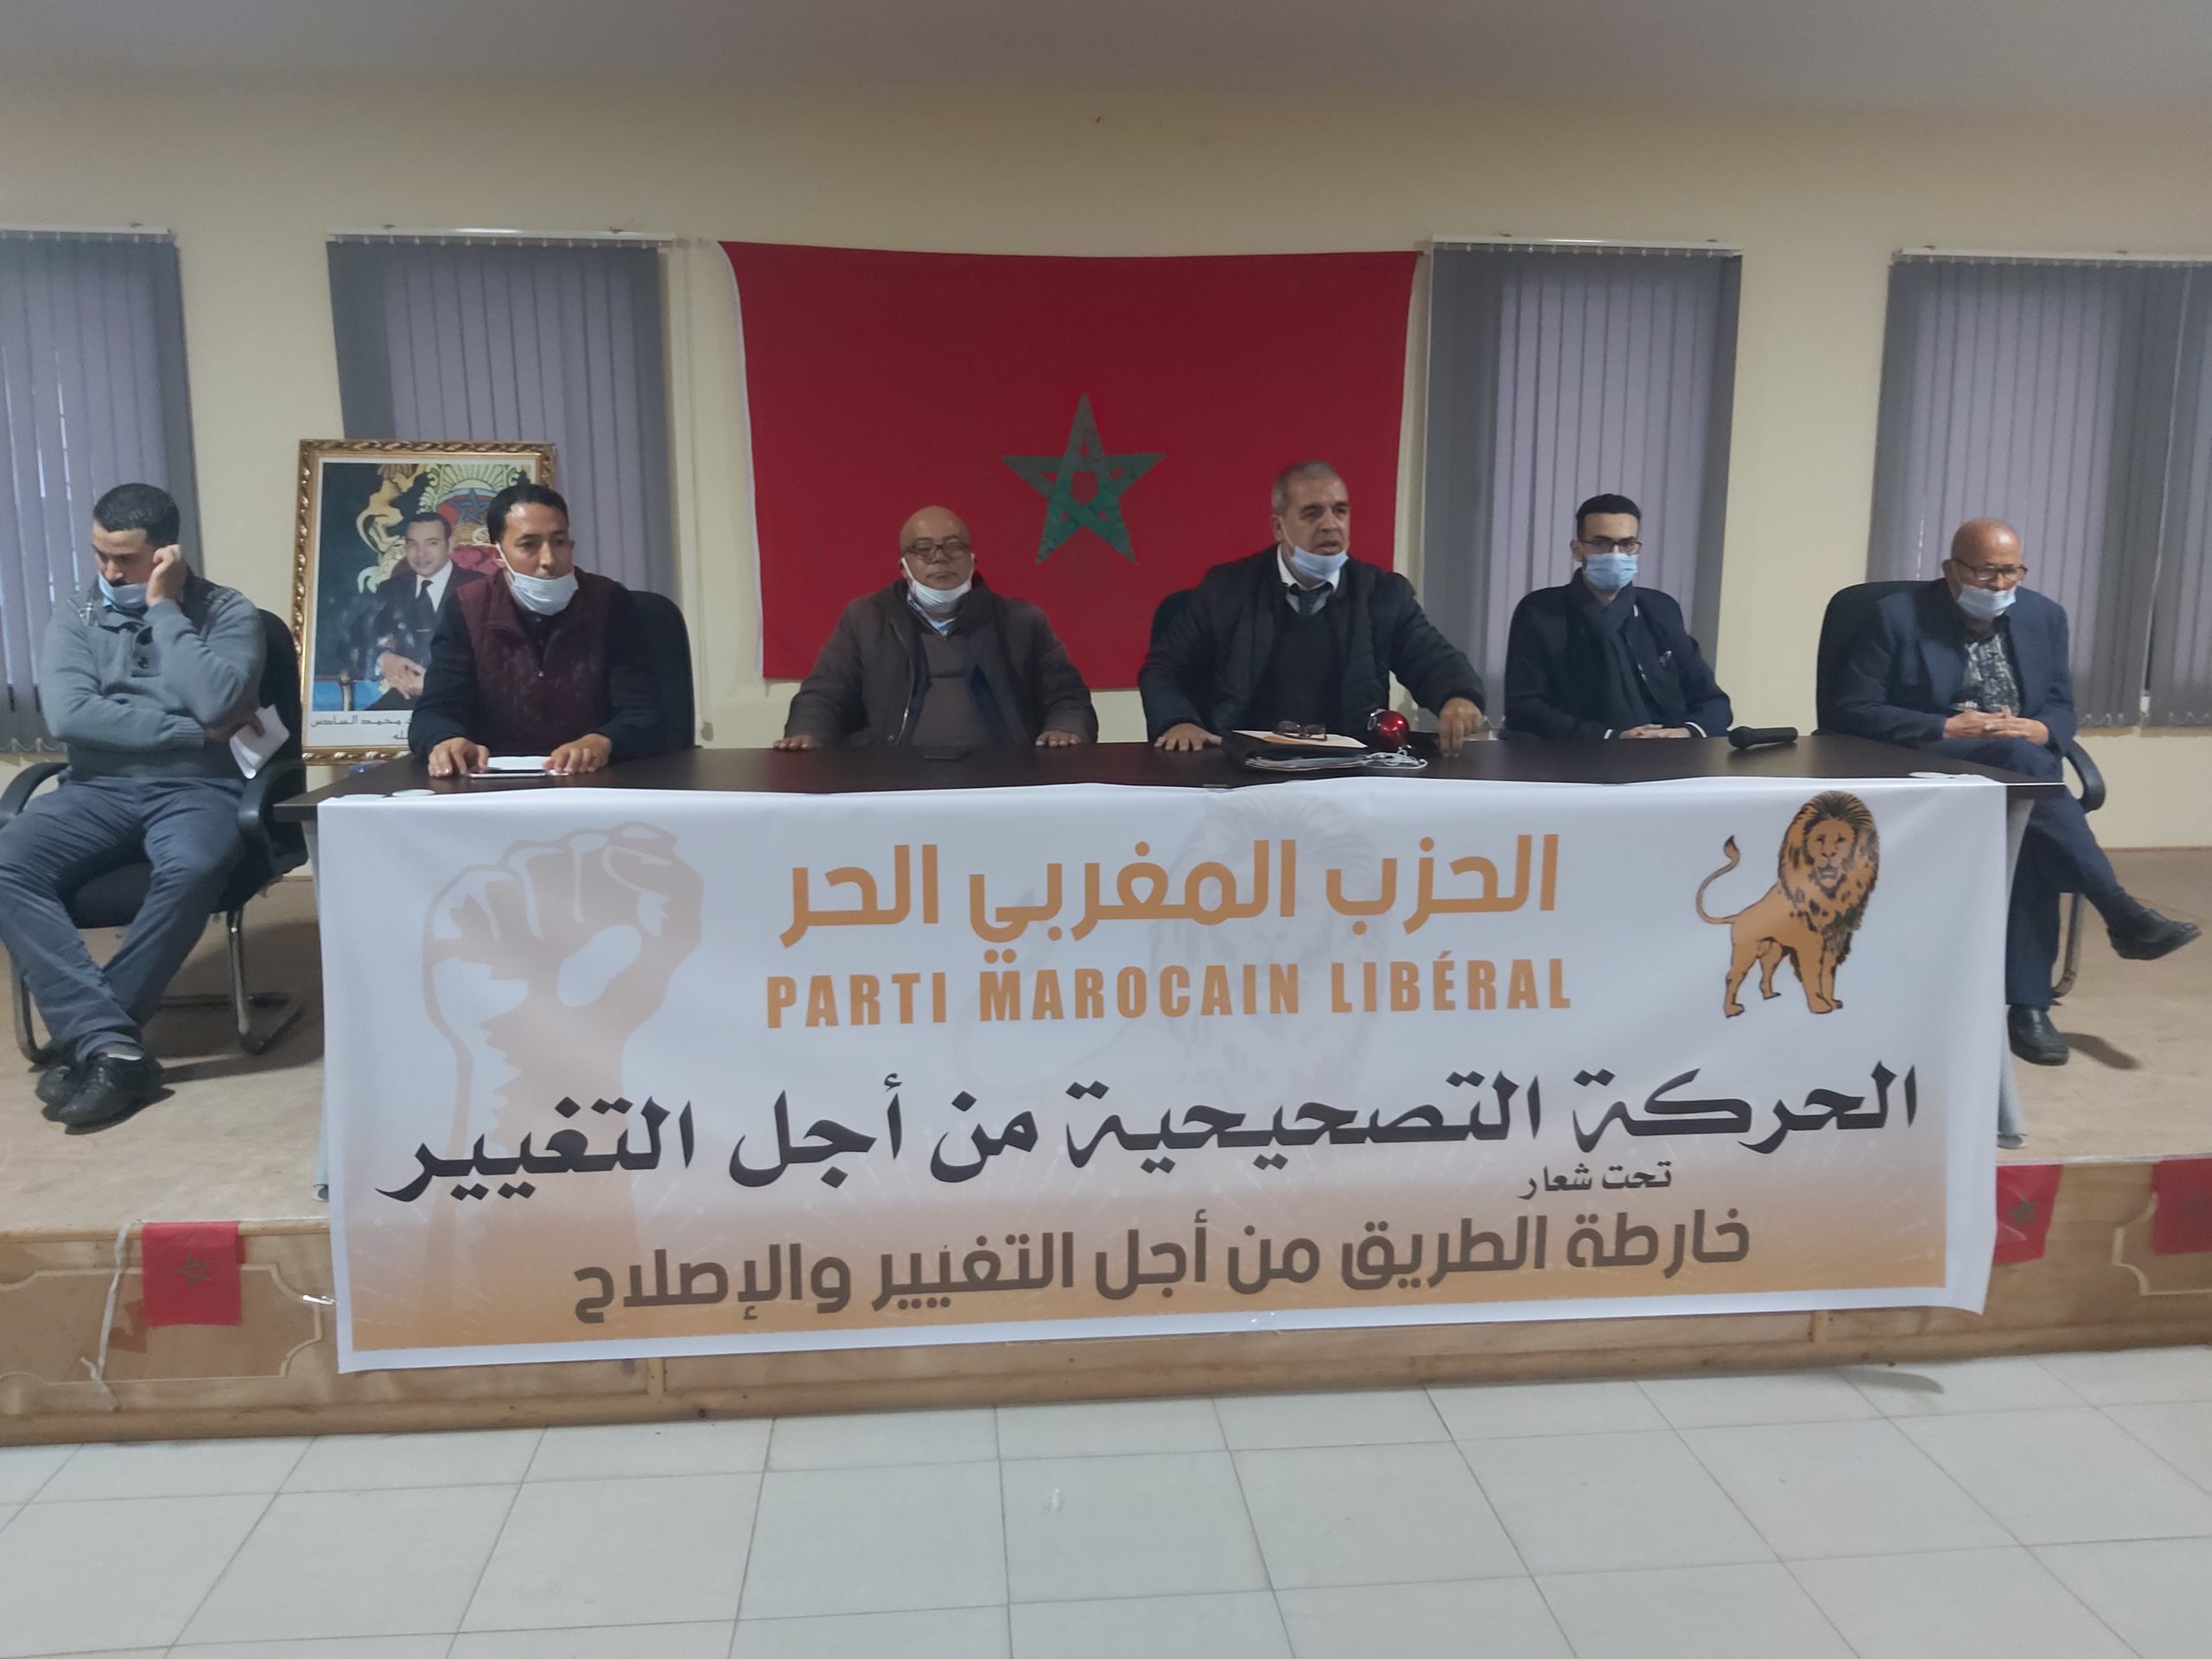 اللجنة التحضيرية لمؤتمر “الحزب المغربي الحر” تعلن فتح الترشيح لمنصب المنسق الوطني